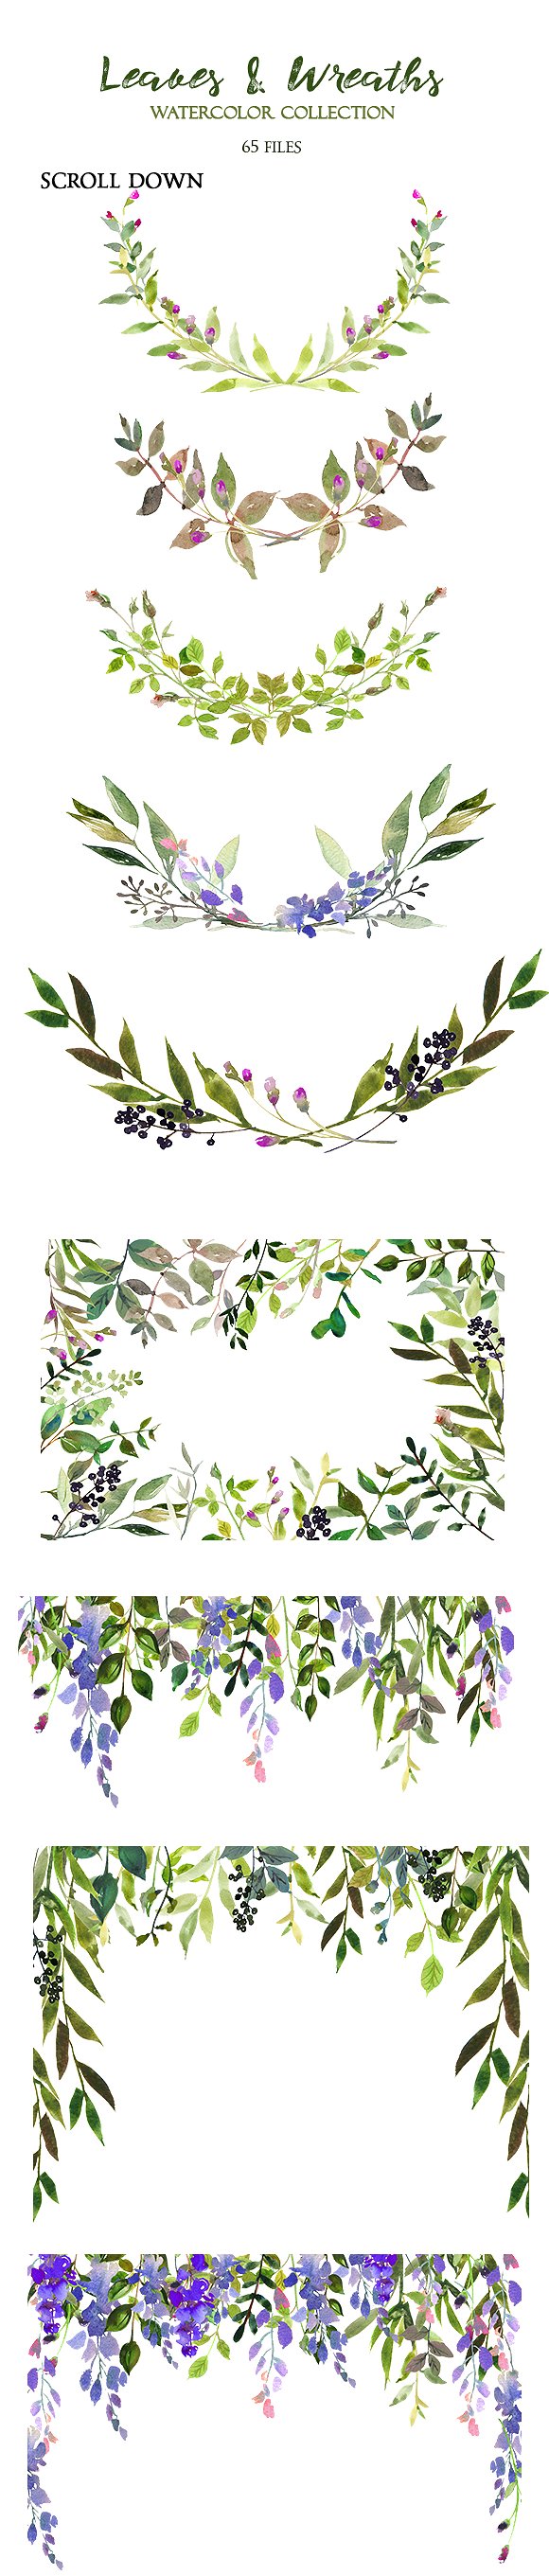 手绘水彩植物设计素材Leaves and Wreaths W